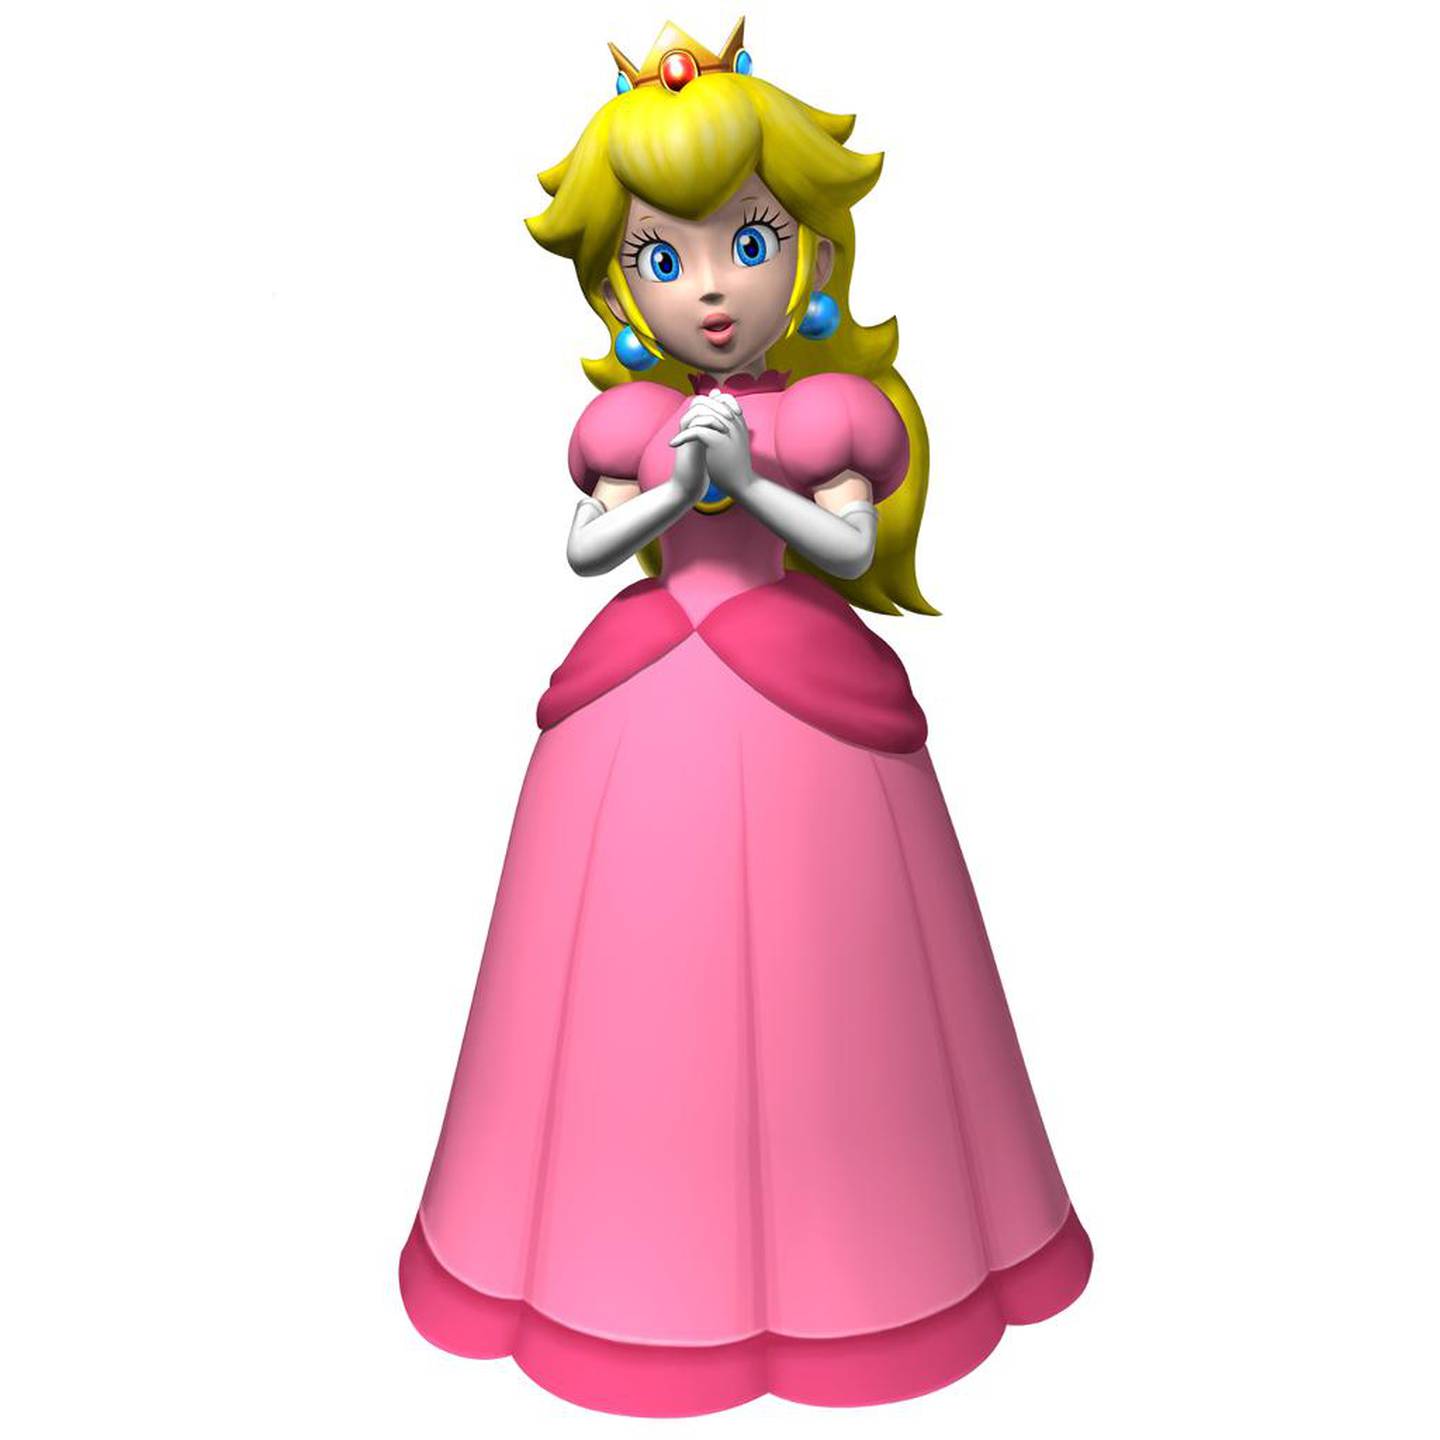 Prinsesse Peach har figurert i en rekke Mario-spill, og i de aller fleste av dem må hun reddes av helten etter å ha blitt kidnappet.